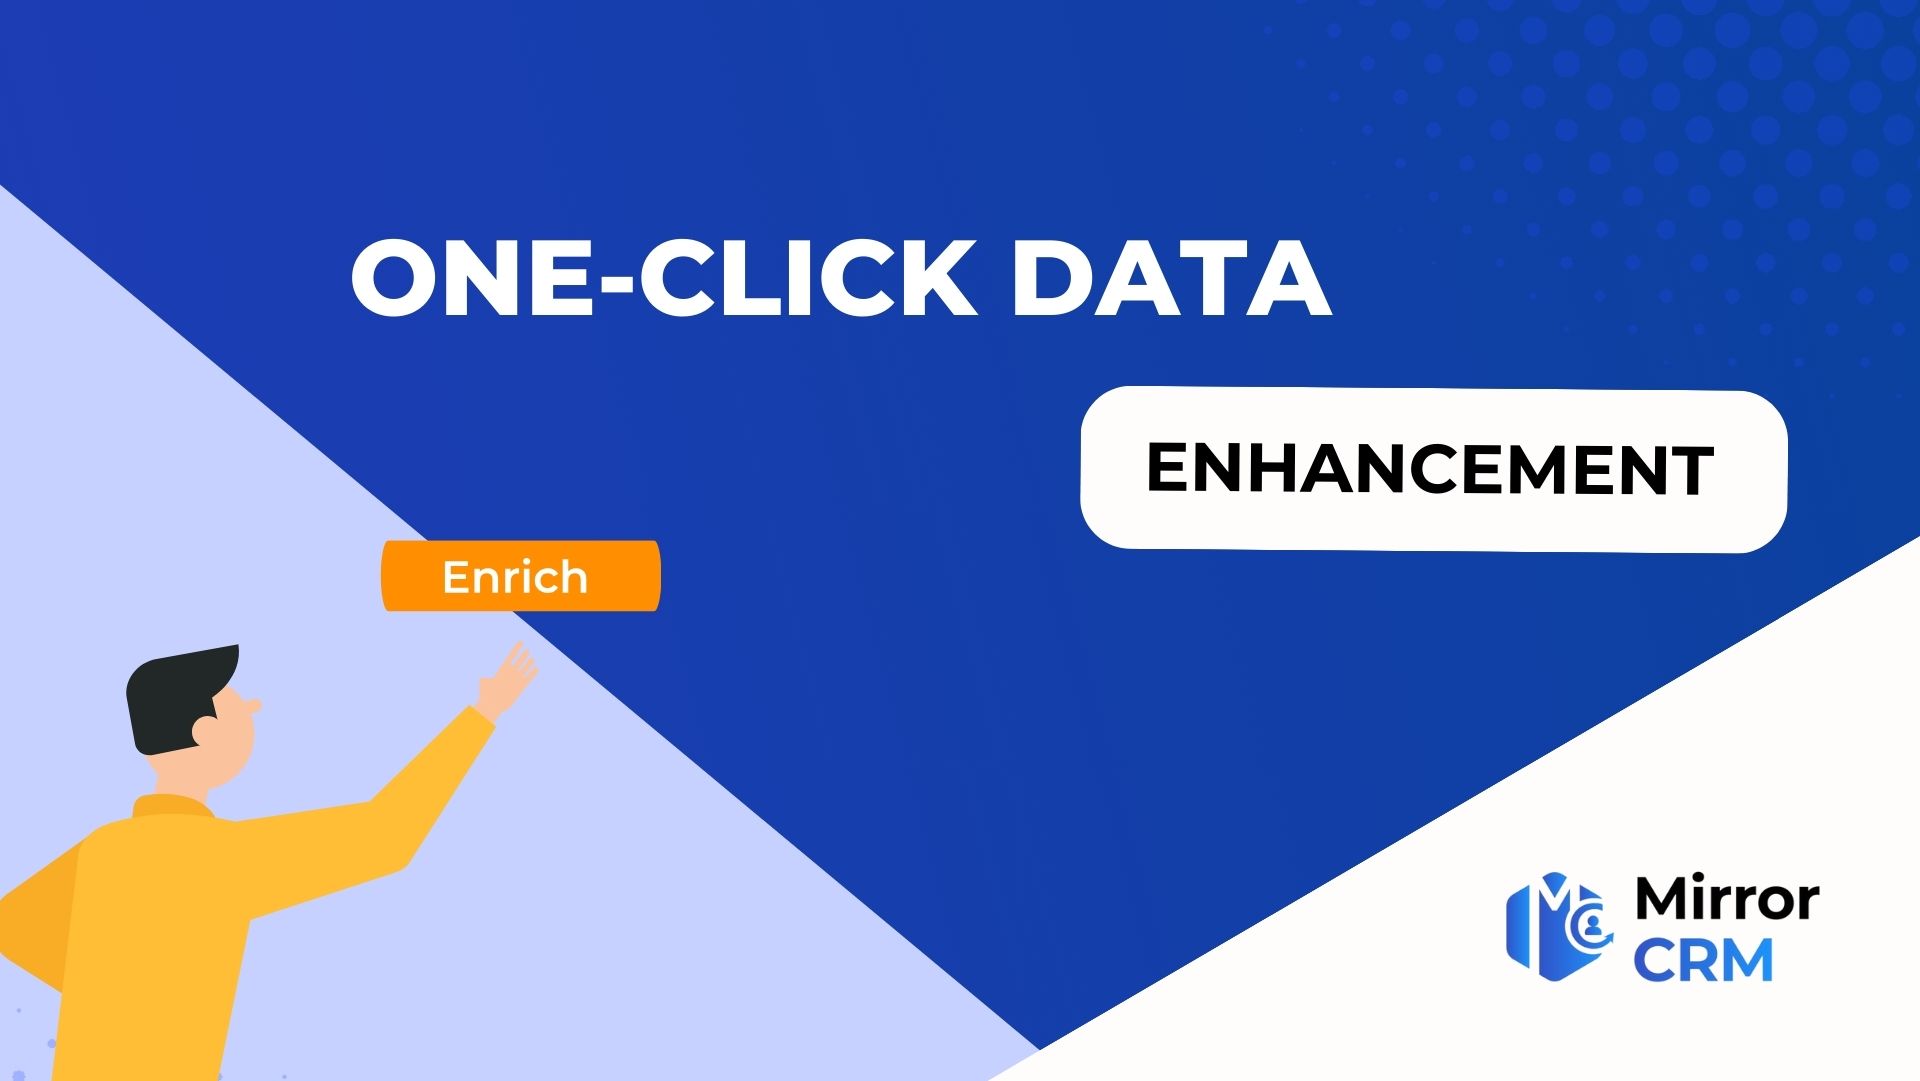 One-click data enhancement